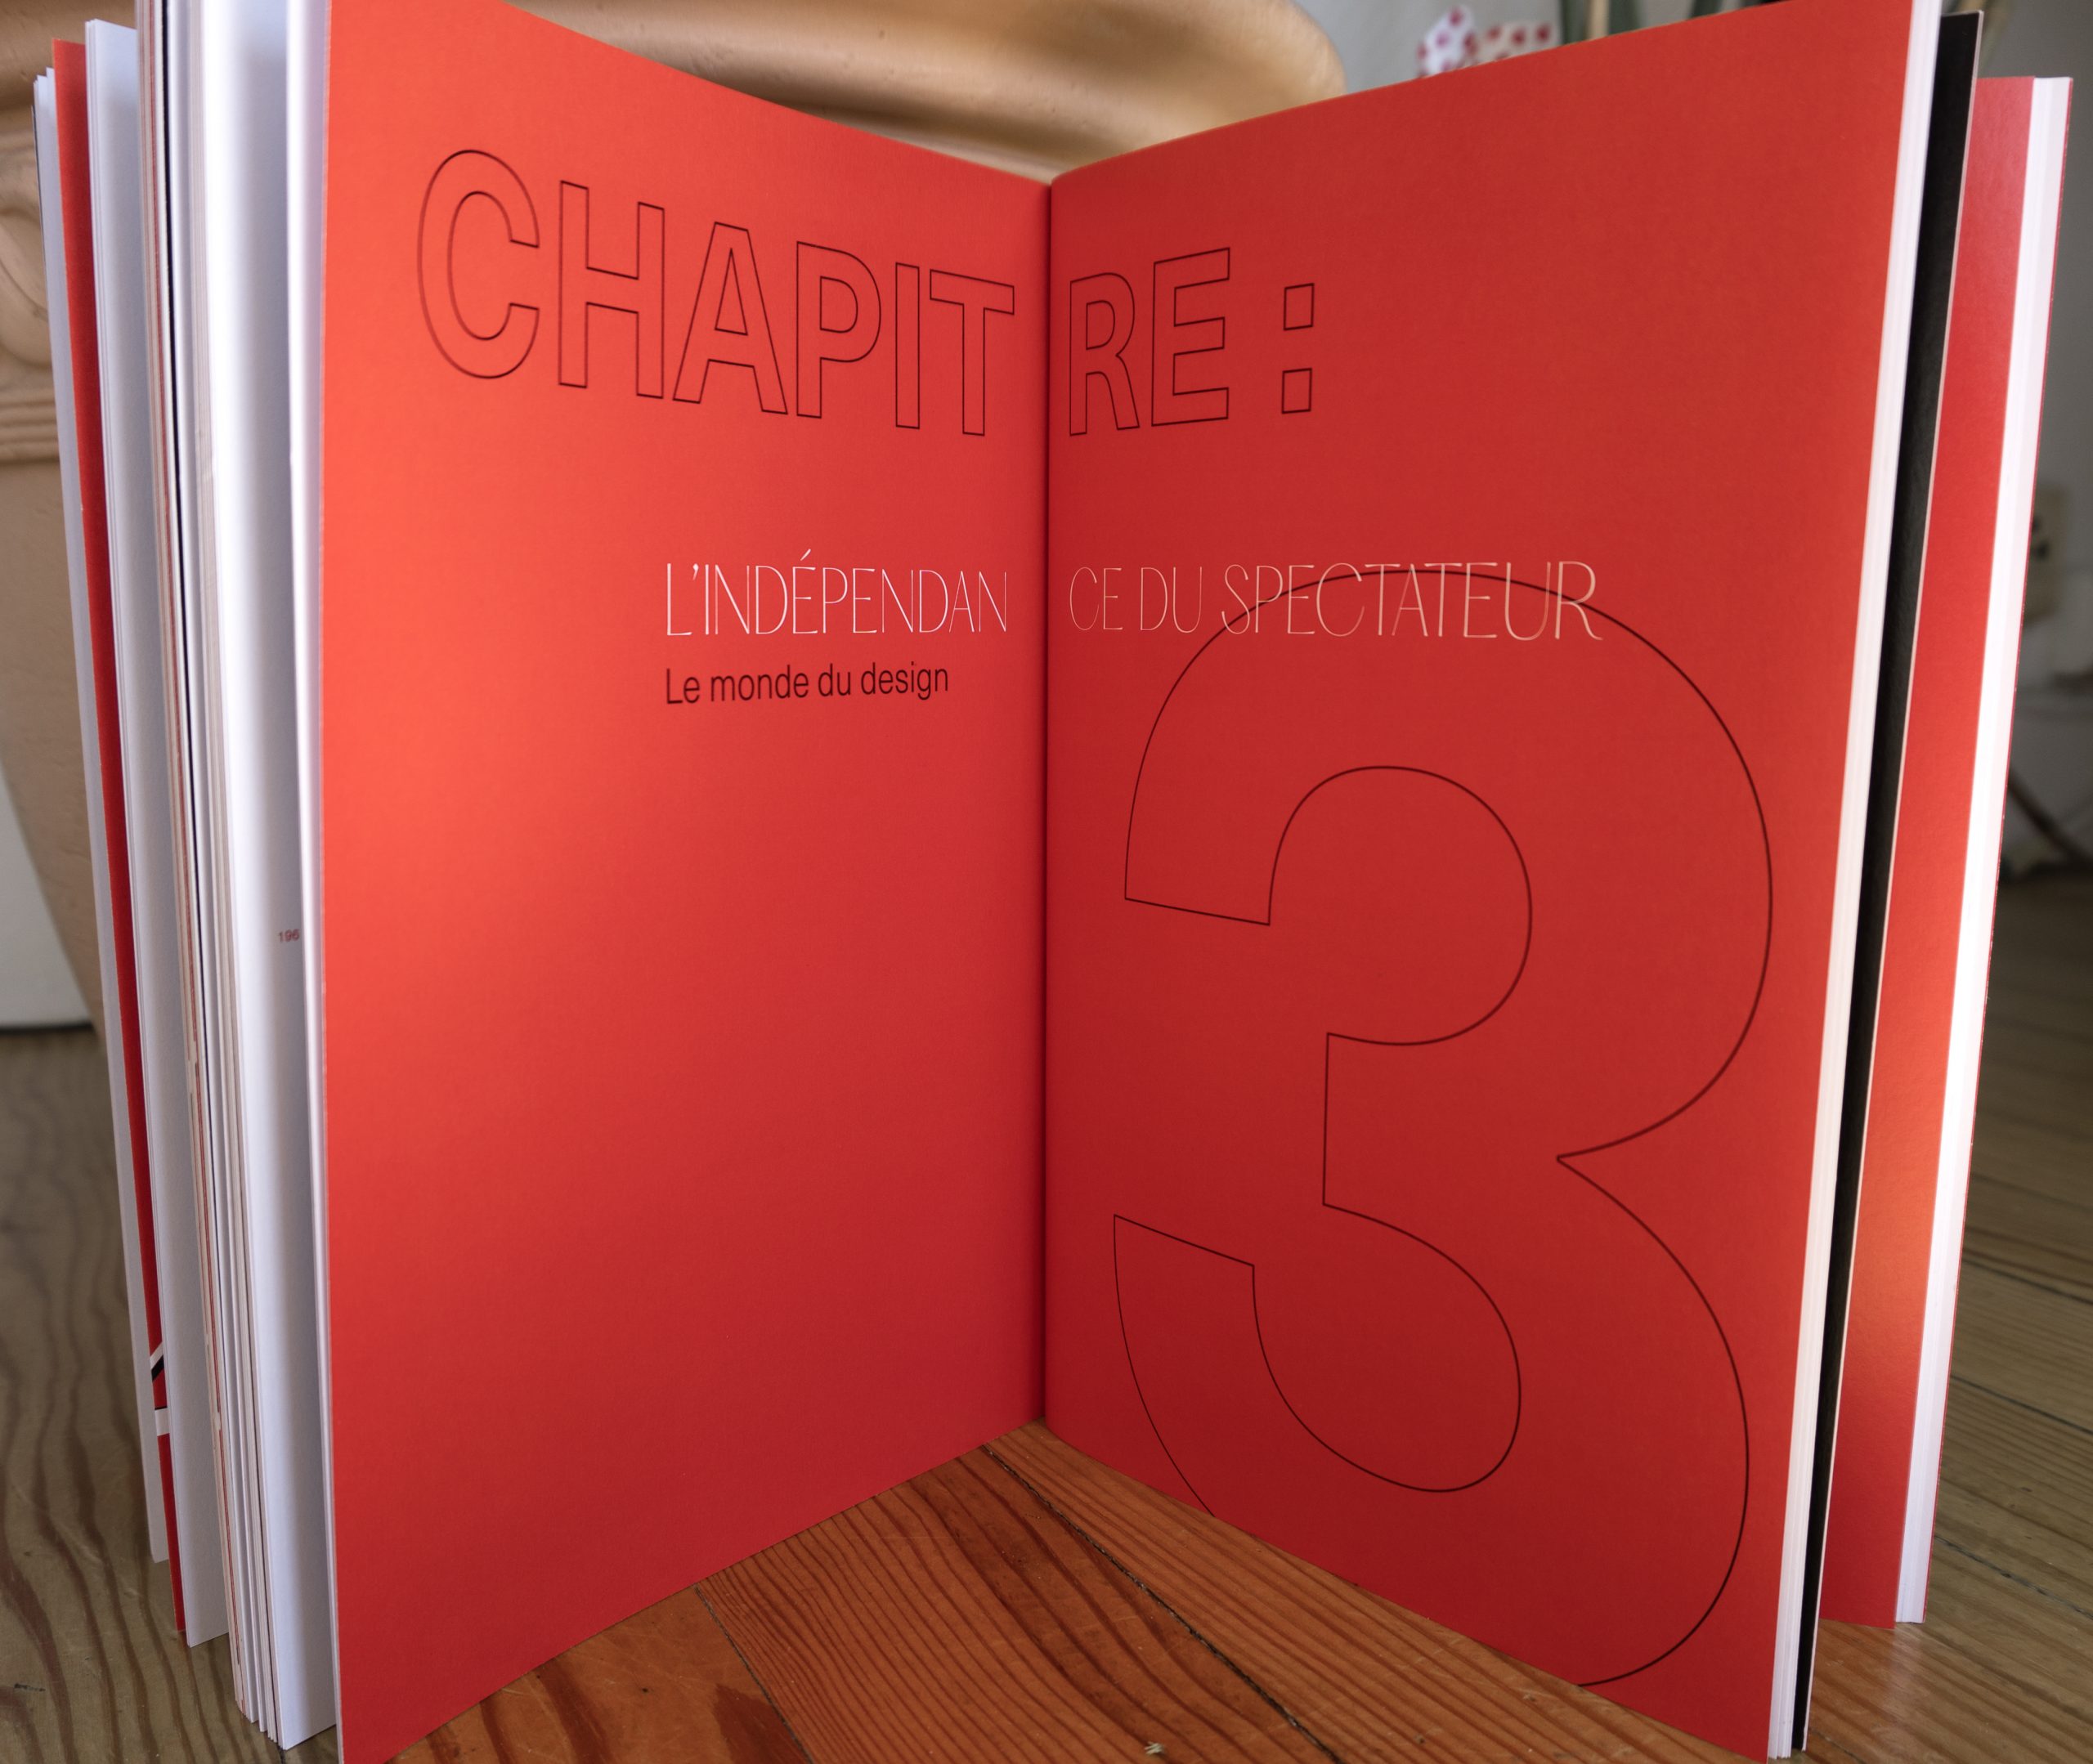 Visuel de l'intérieur du livre montrant la double page sur fond rouge annonçant le troisième chapitre sur l'indépendance du spectateur.